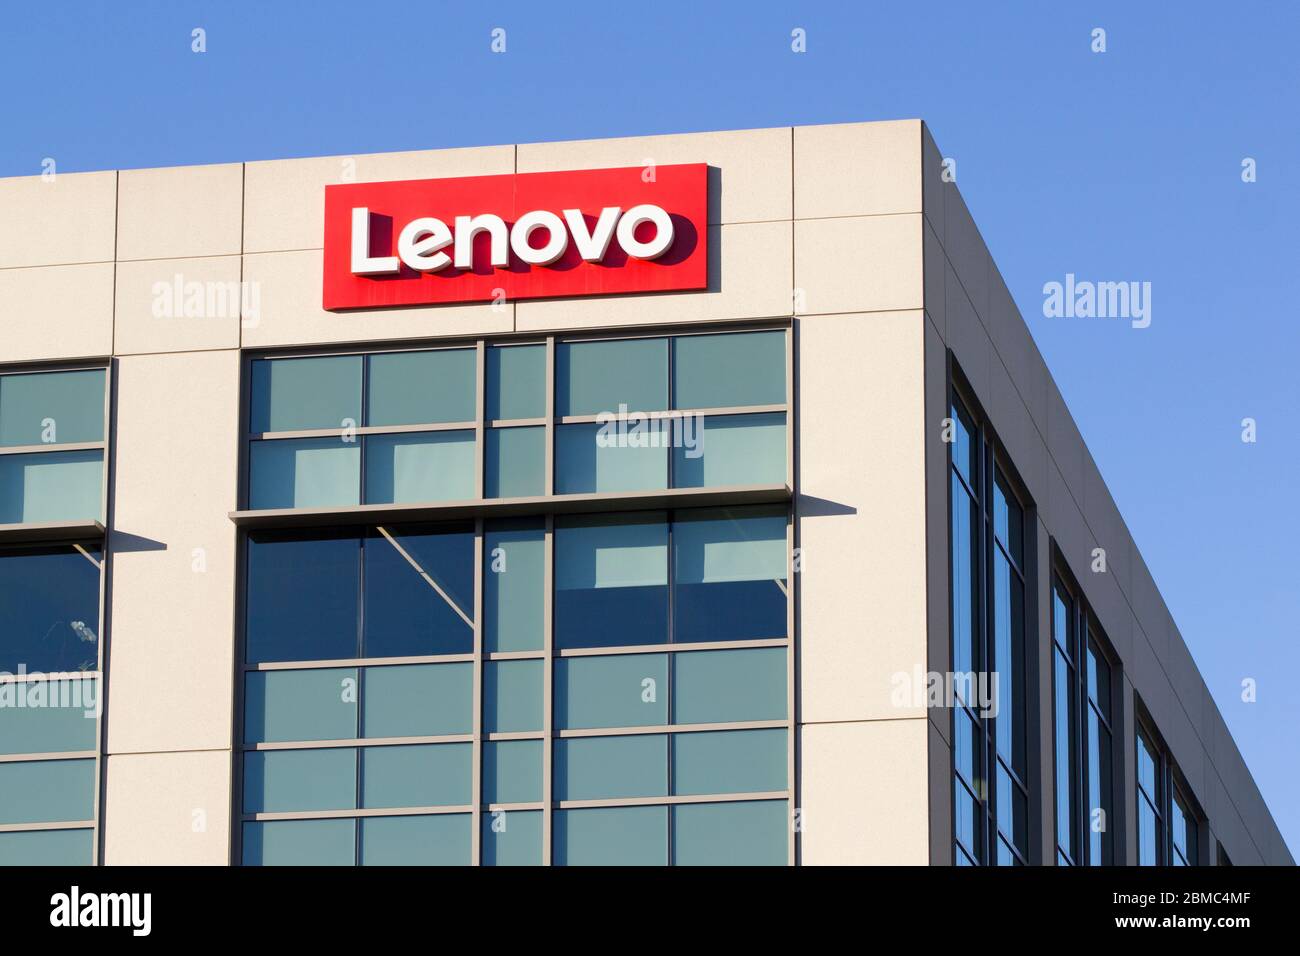 Le panneau Lenovo est visible au bureau de Lenovo Santa Clara le 7 février 2020. Lenovo Group Limited est une société chinoise multinationale de technologie. Banque D'Images